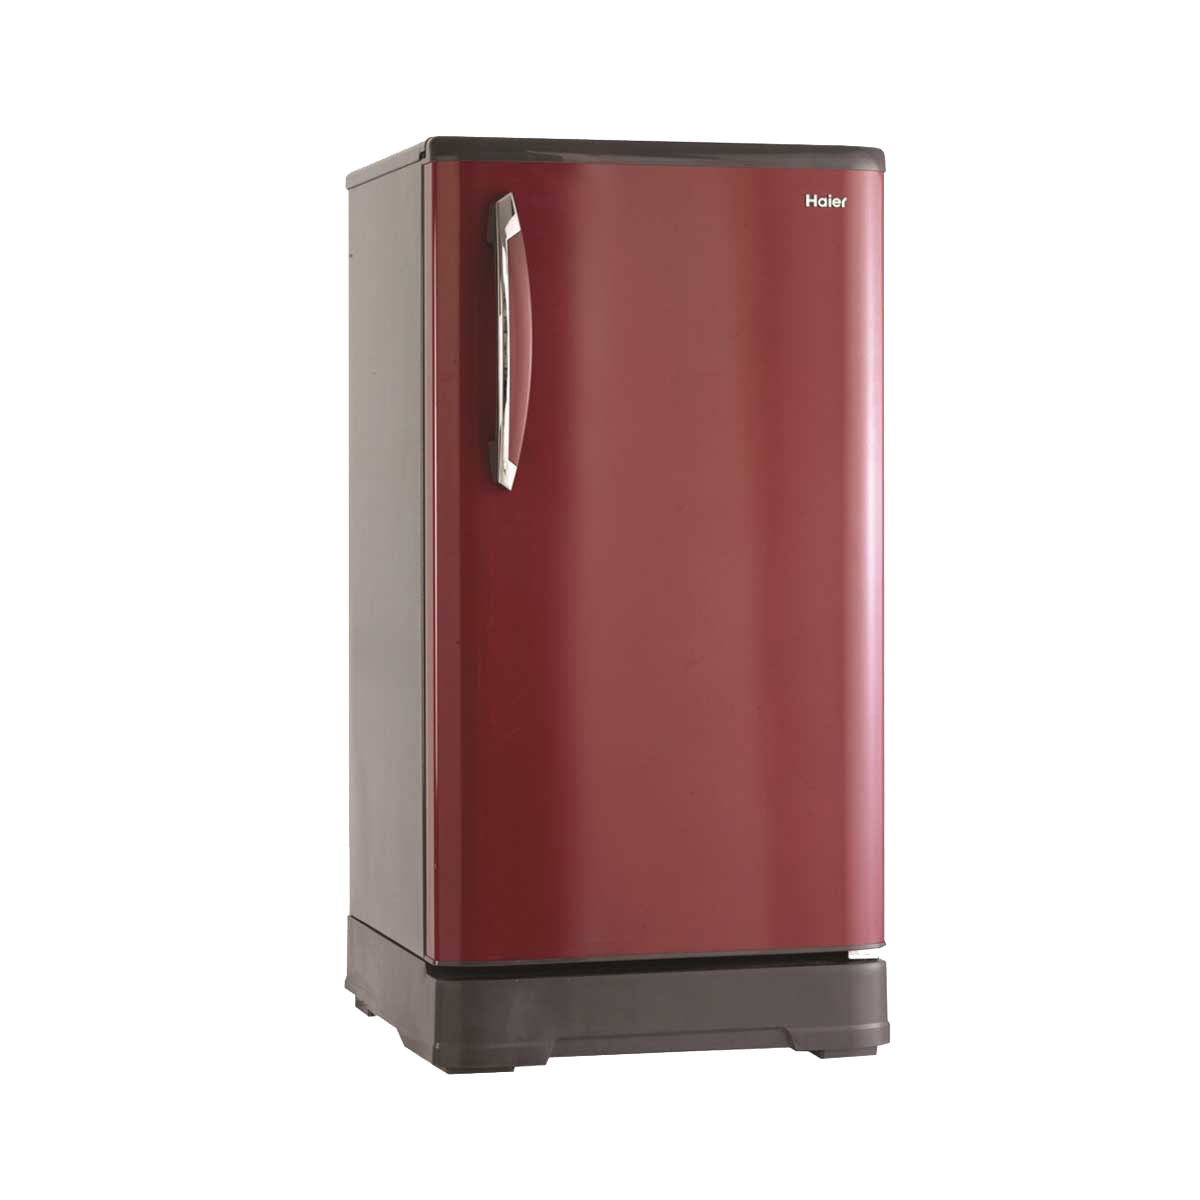 LG Réfrigérateur PNG Image de fond